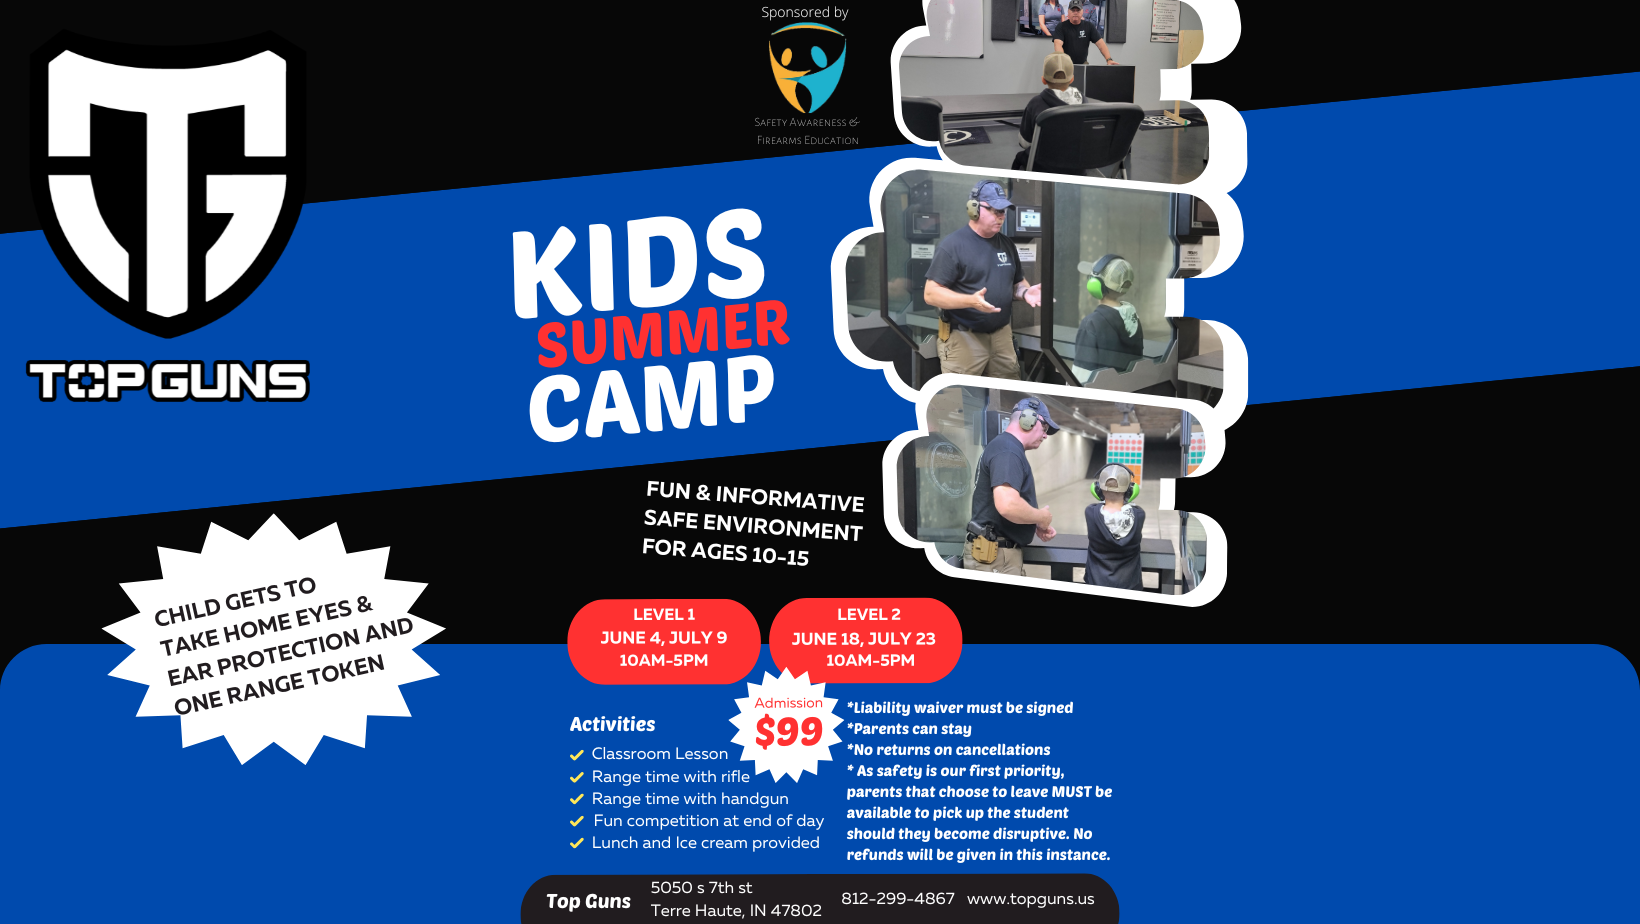 https://www.indianatopguns.com/kids-summer-camp